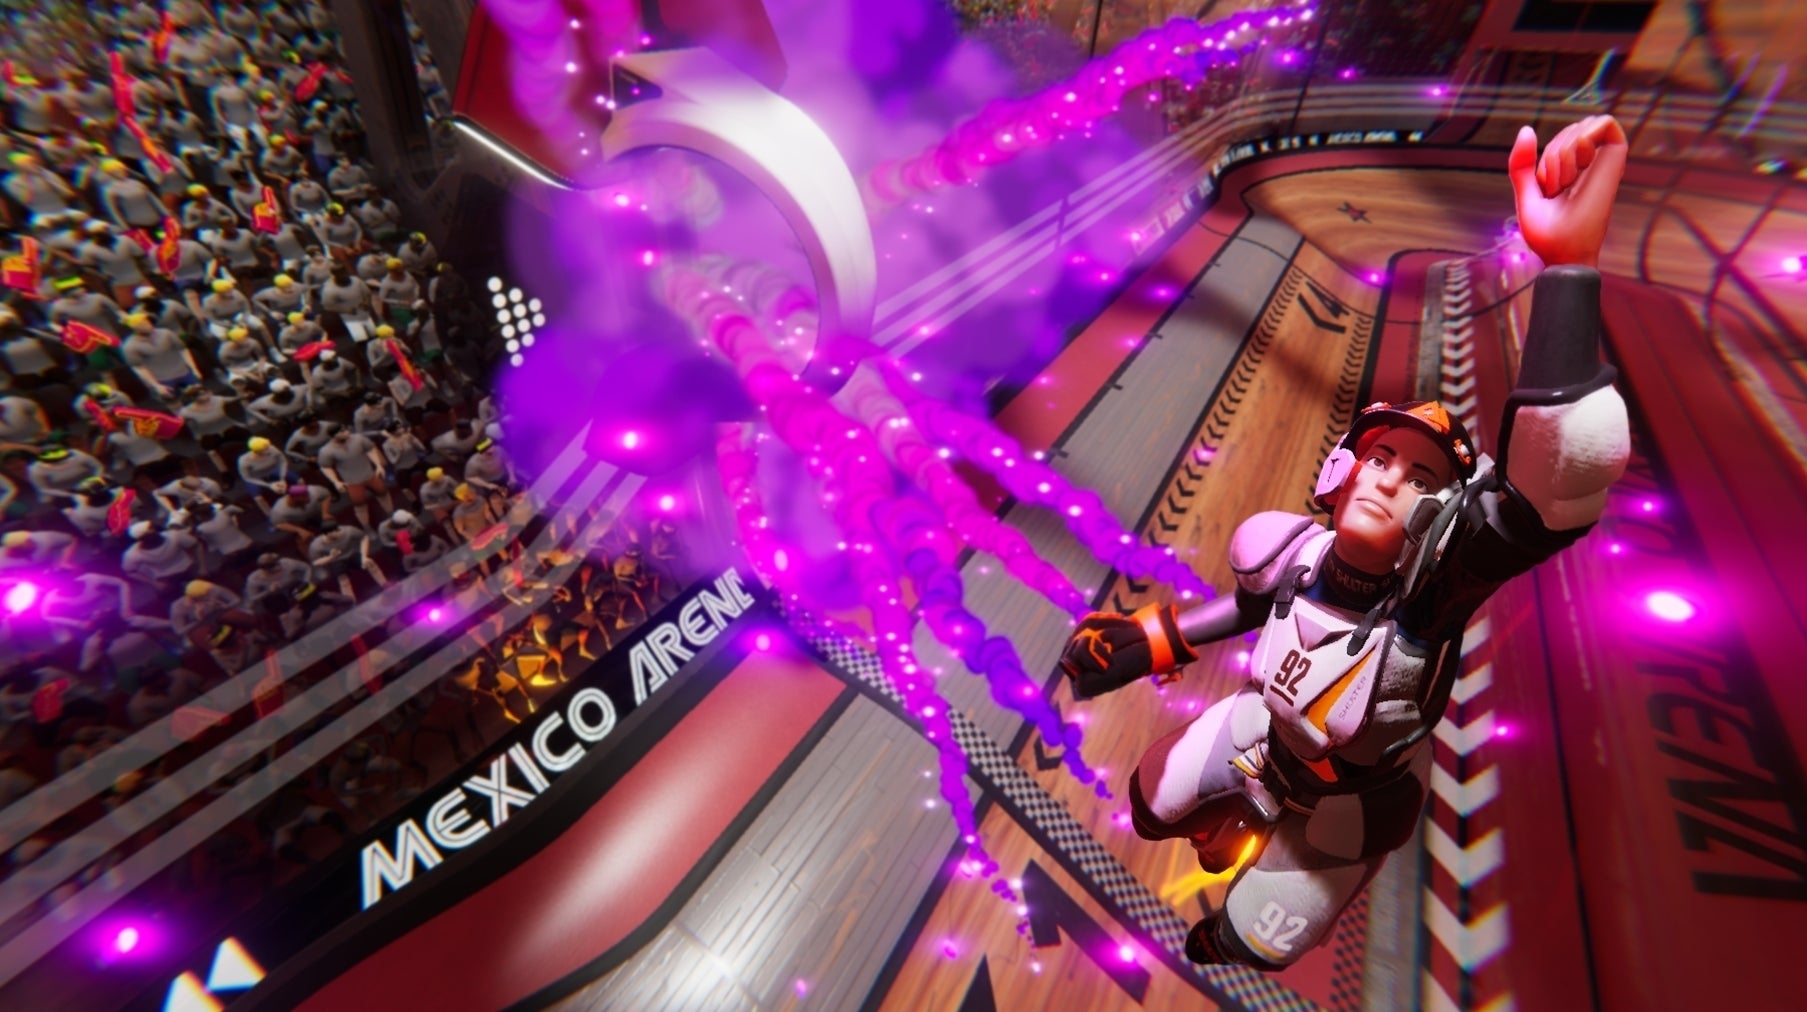 Bilder zu Roller Champions macht Lust auf mehr - aber ein Problem hat Ubisoft seit 2019 nicht gelöst